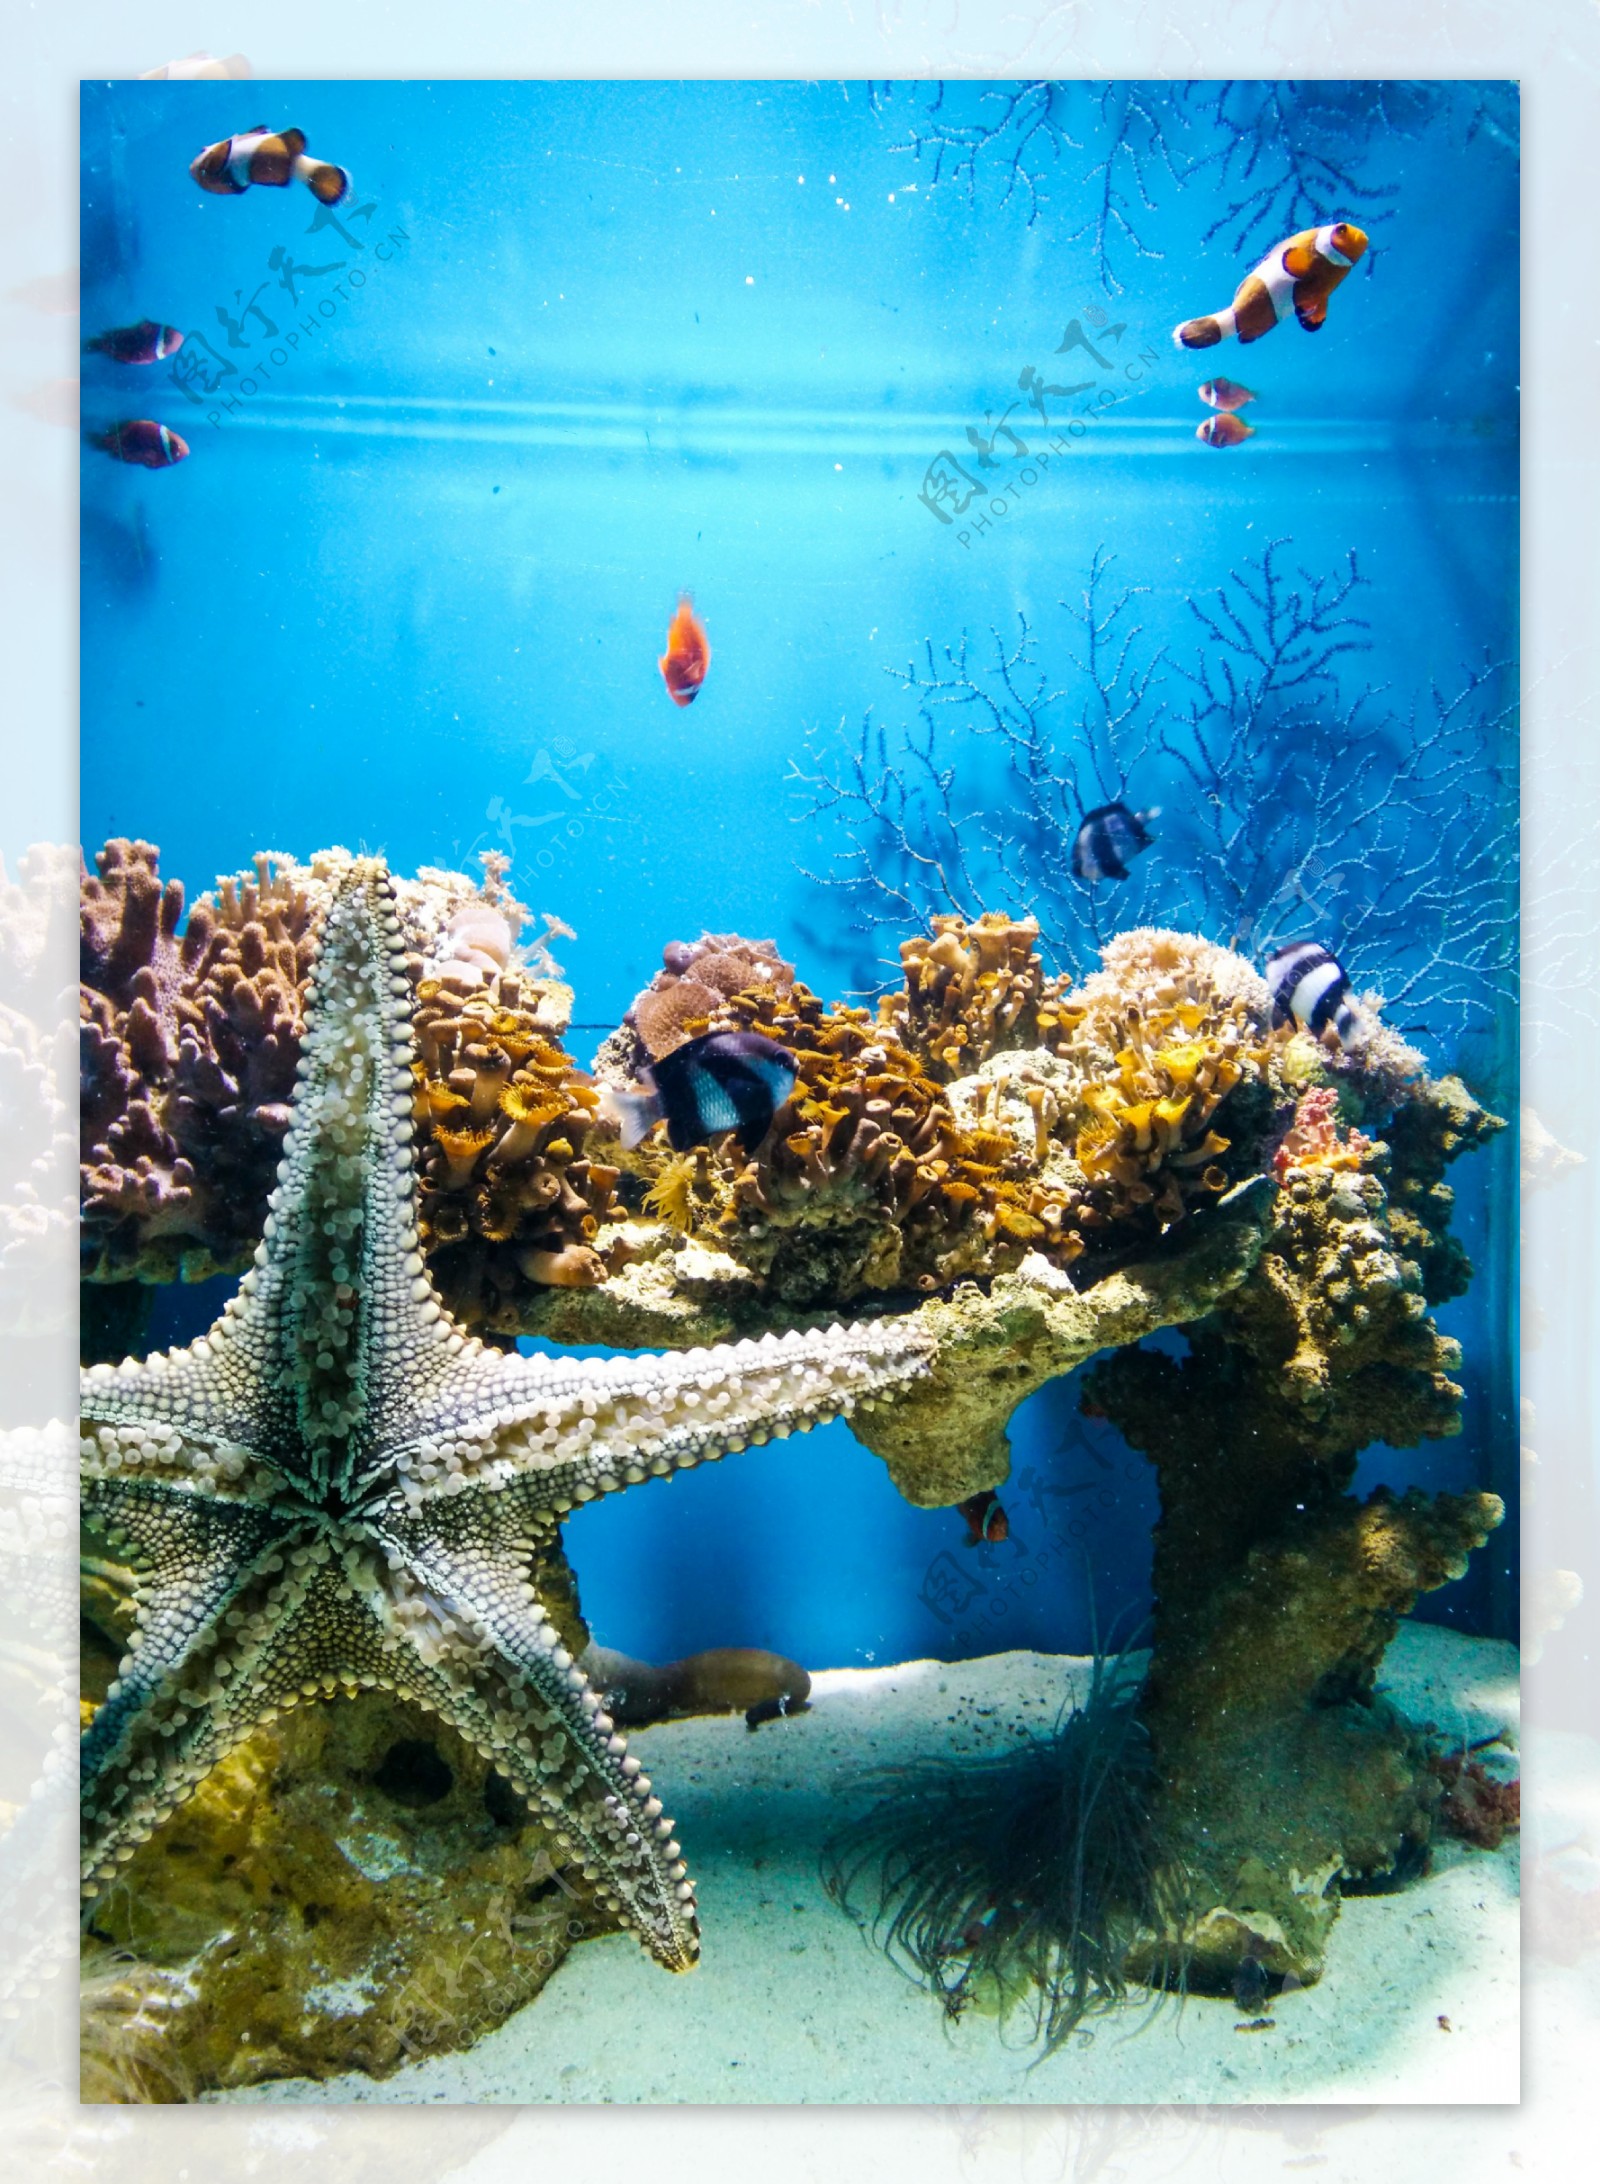 海洋生物图片大全_海洋生物图片及名称_海洋生物图片-生活资讯网